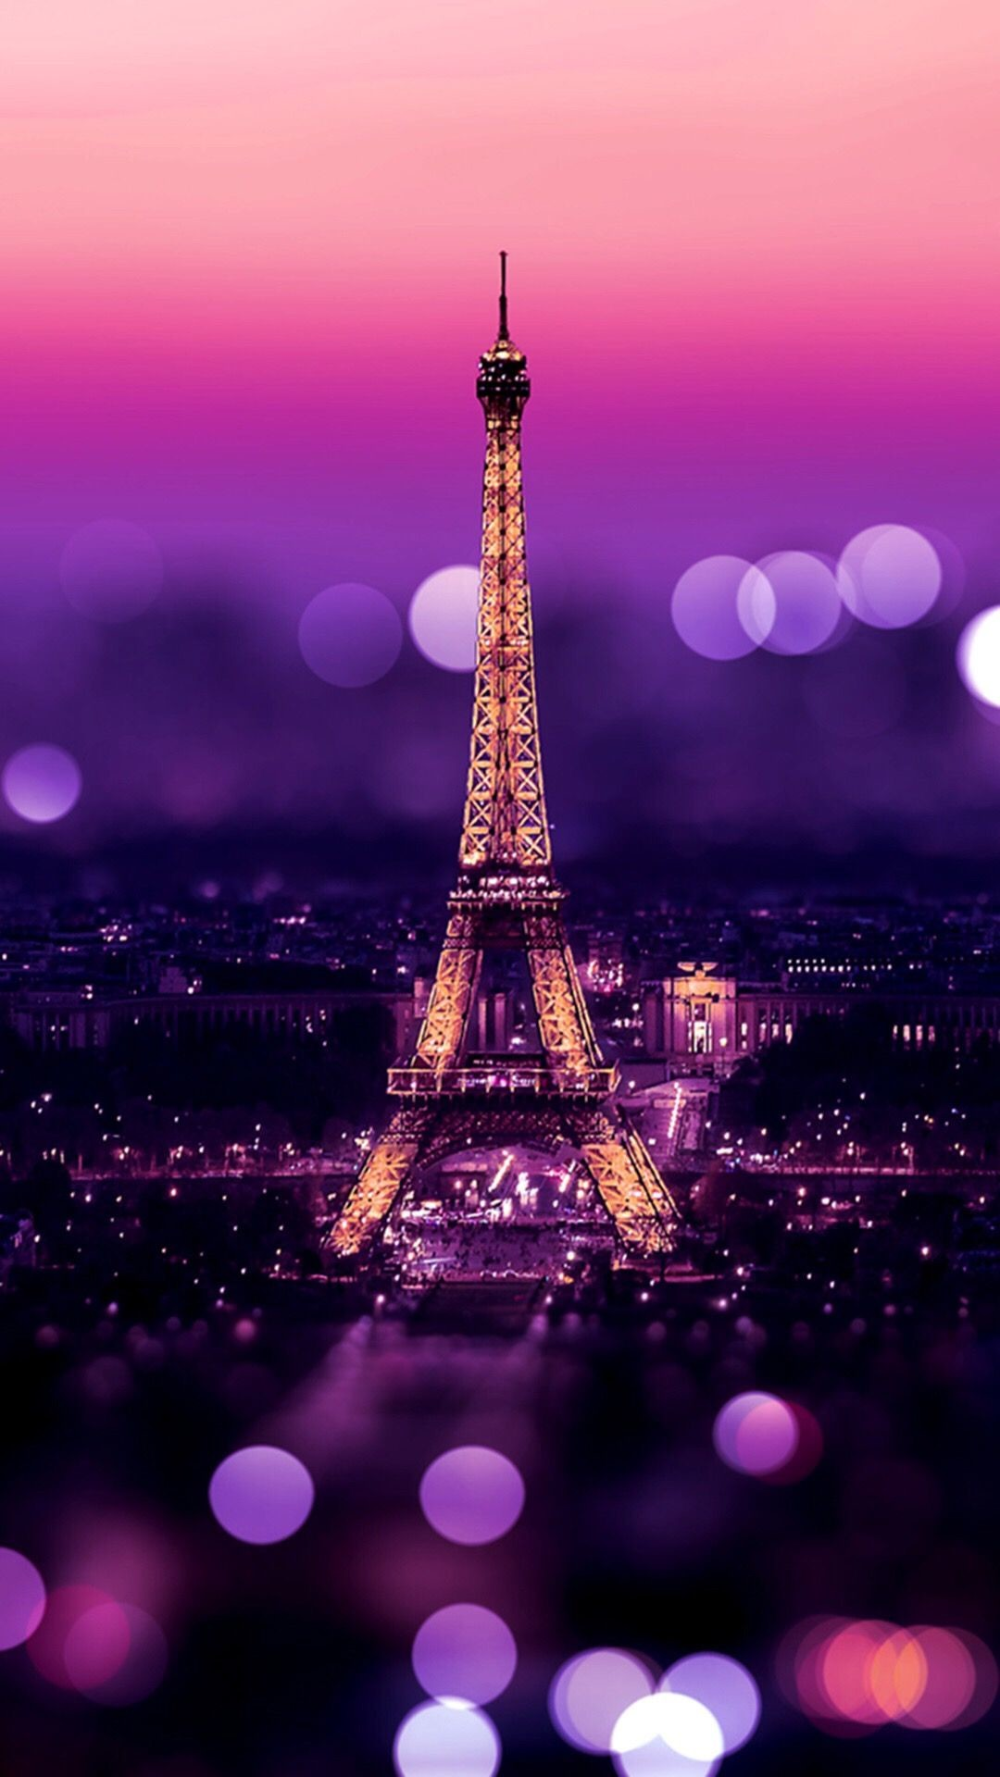 Girly Eiffel Tower Wallpaper. Paris wallpaper iphone, Paris wallpaper, France wallpaper